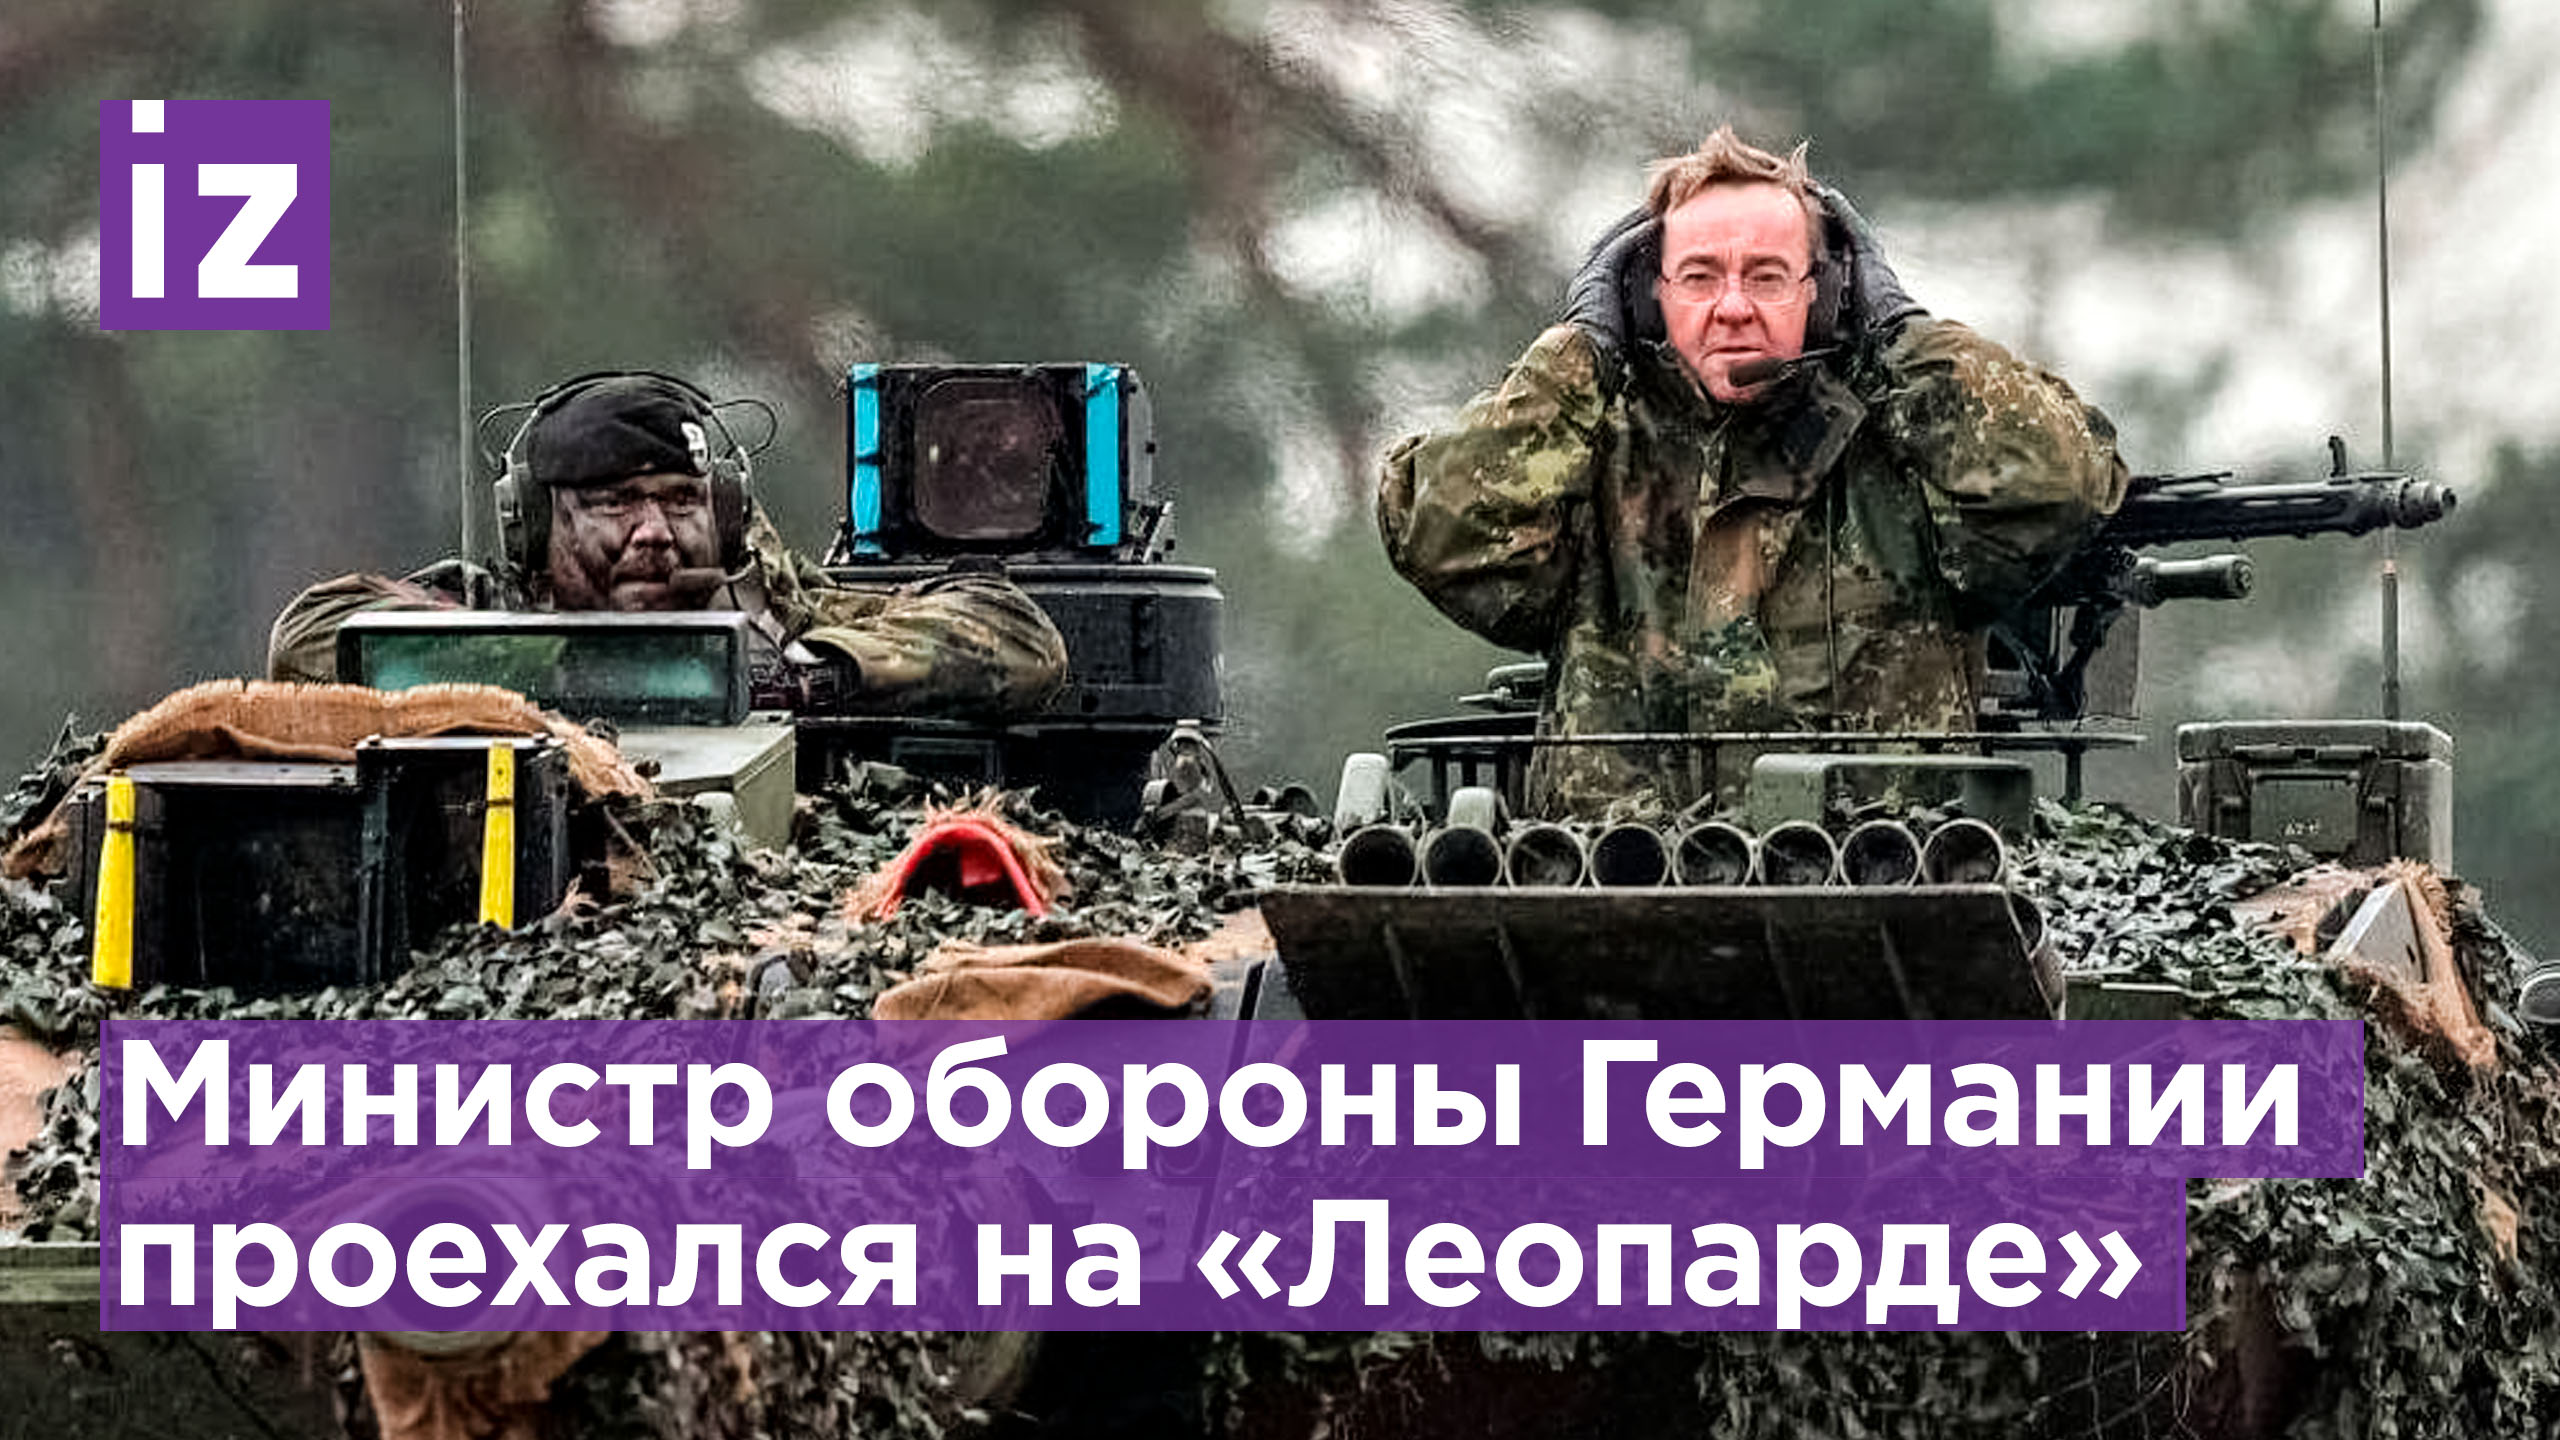 Министр обороны Германии проехался на на танке Leopard 2A6 по бездорожью / Известия